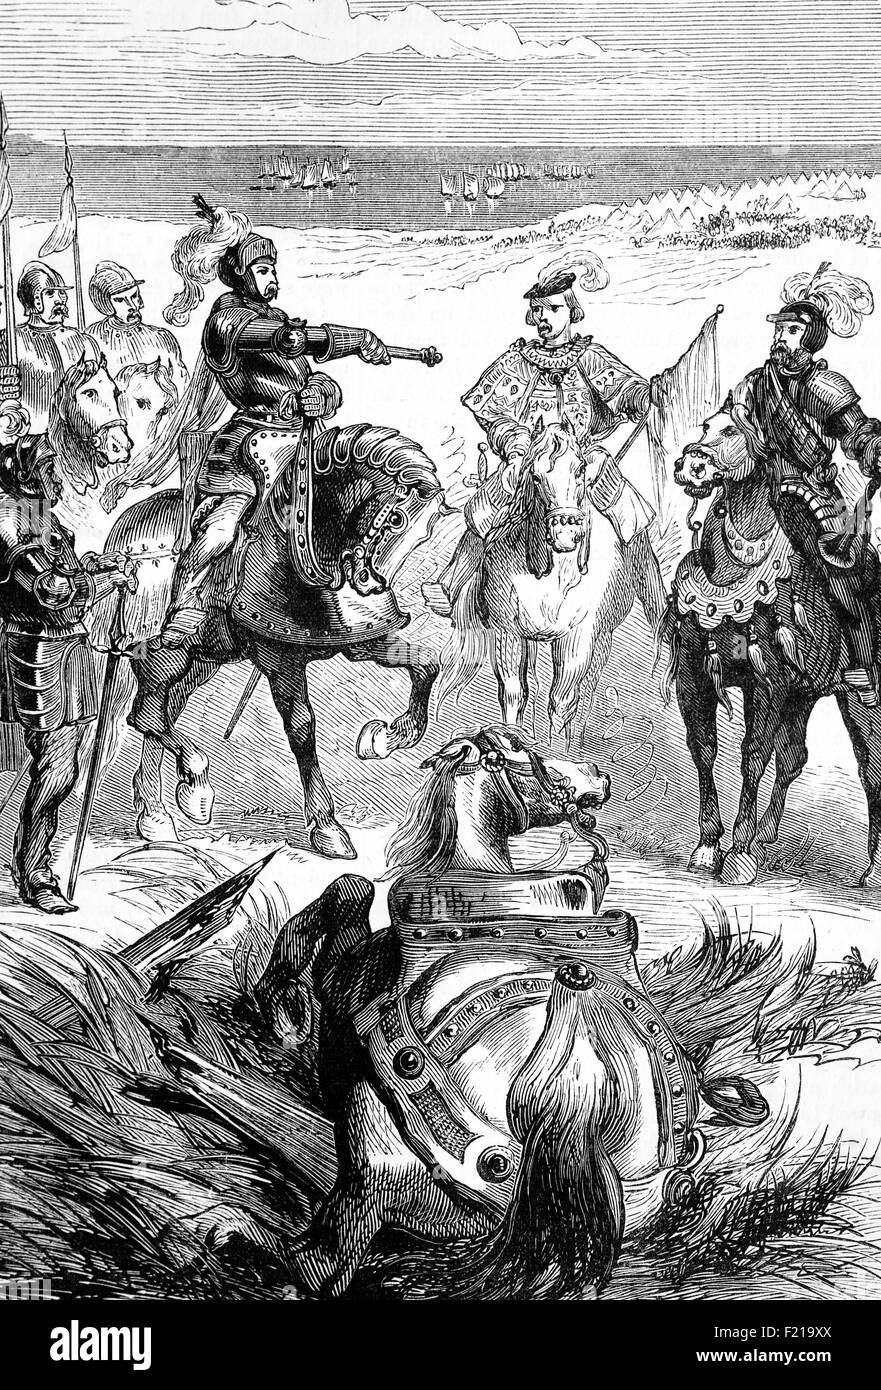 Ein Herald, der eine Herausforderung für einen Einzelkampf von Lord Huntley bis zum Herzog von Somerset abliefert; Ein Auftakt zur Schlacht von Pinkie Cleugh, am Ufer des Flusses Esk in der Nähe von Musselburgh, Schottland am 10. September 1547, Es war die letzte Schlacht zwischen schottischen und englischen Armeen auf den britischen Inseln, vor der Union der Kronen. Es war Teil des Konflikts als die Rough Wooing bekannt und gilt als die erste moderne Schlacht auf den britischen Inseln gewesen. Es war eine katastrophale Niederlage für Schottland, wo es als "Schwarzer Samstag" bekannt wurde Stockfoto